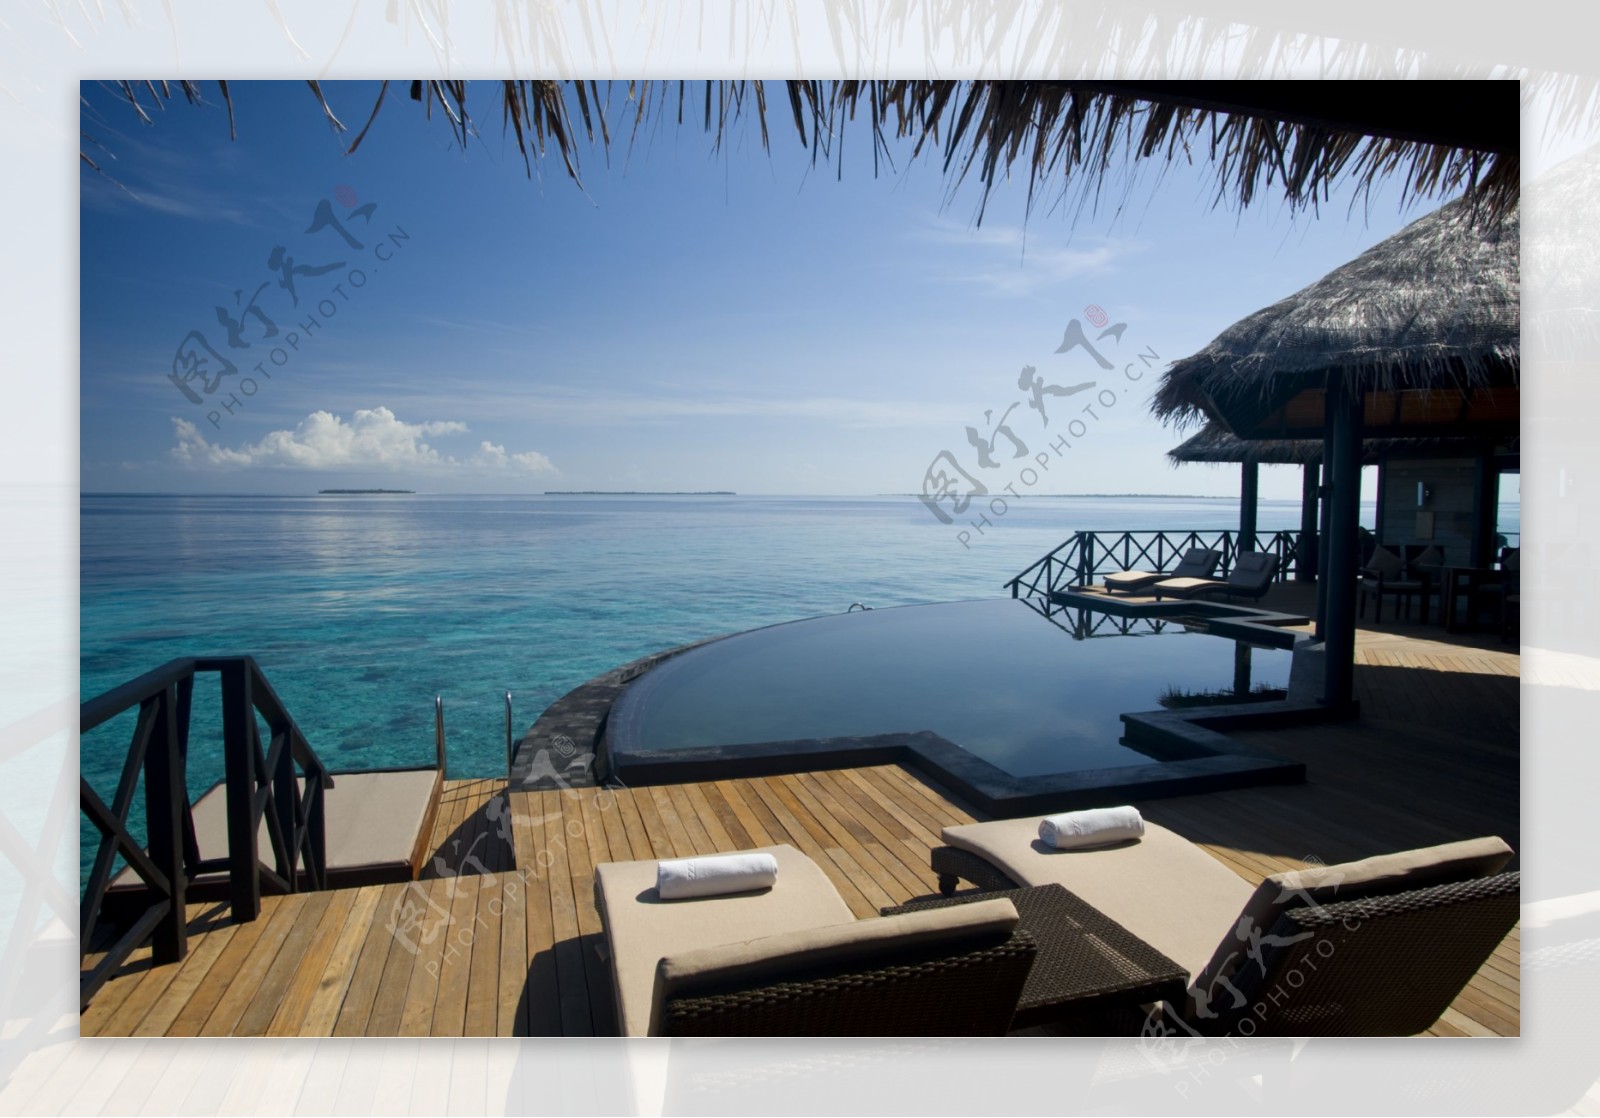 马尔代夫天堂岛度假村海边风光图片